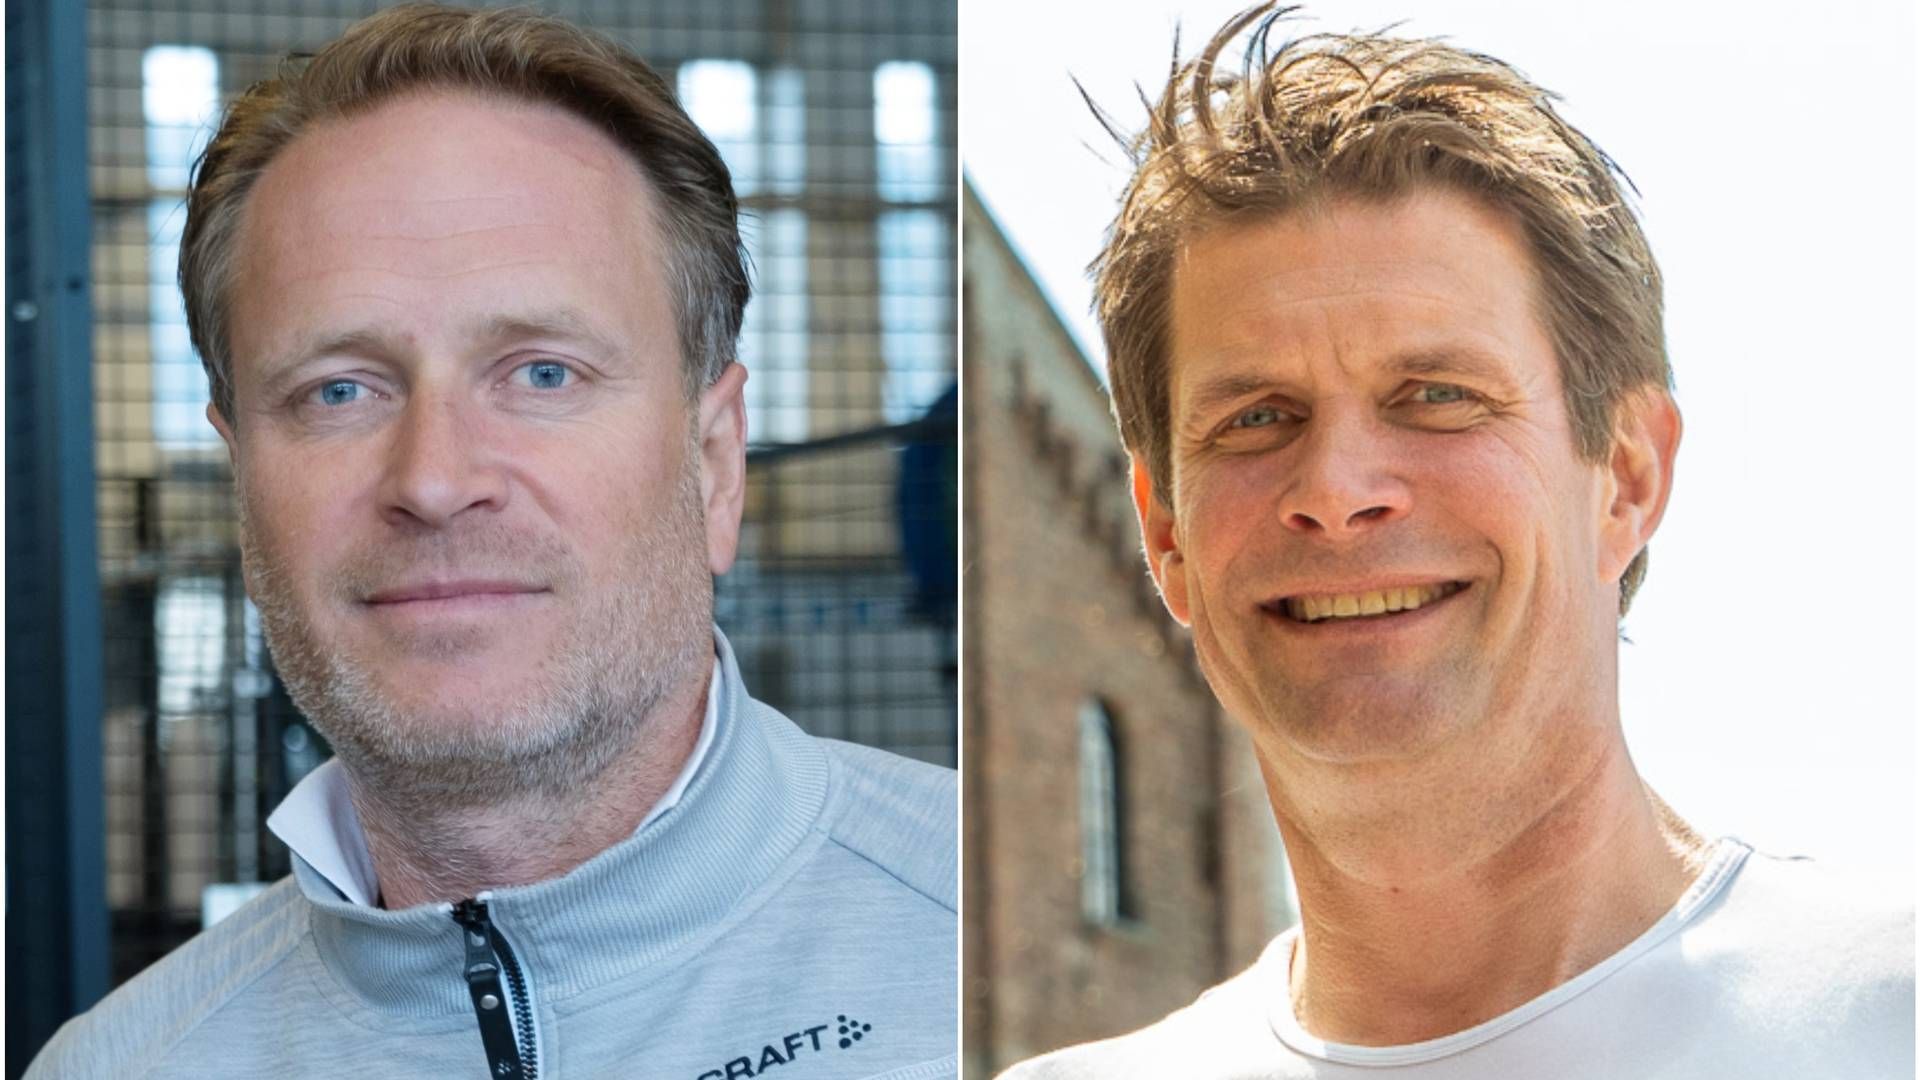 Administrerende direktør i Aass bryggeri, Christian Aass (til venstre), og pressetalsperson i Ringnes, Nicolay Bruusgaard (til høyre), er uenige om hvilken type ølfat som er best for klimaet. | Foto: Anders Hustveit Gerhardsen og Ringnes